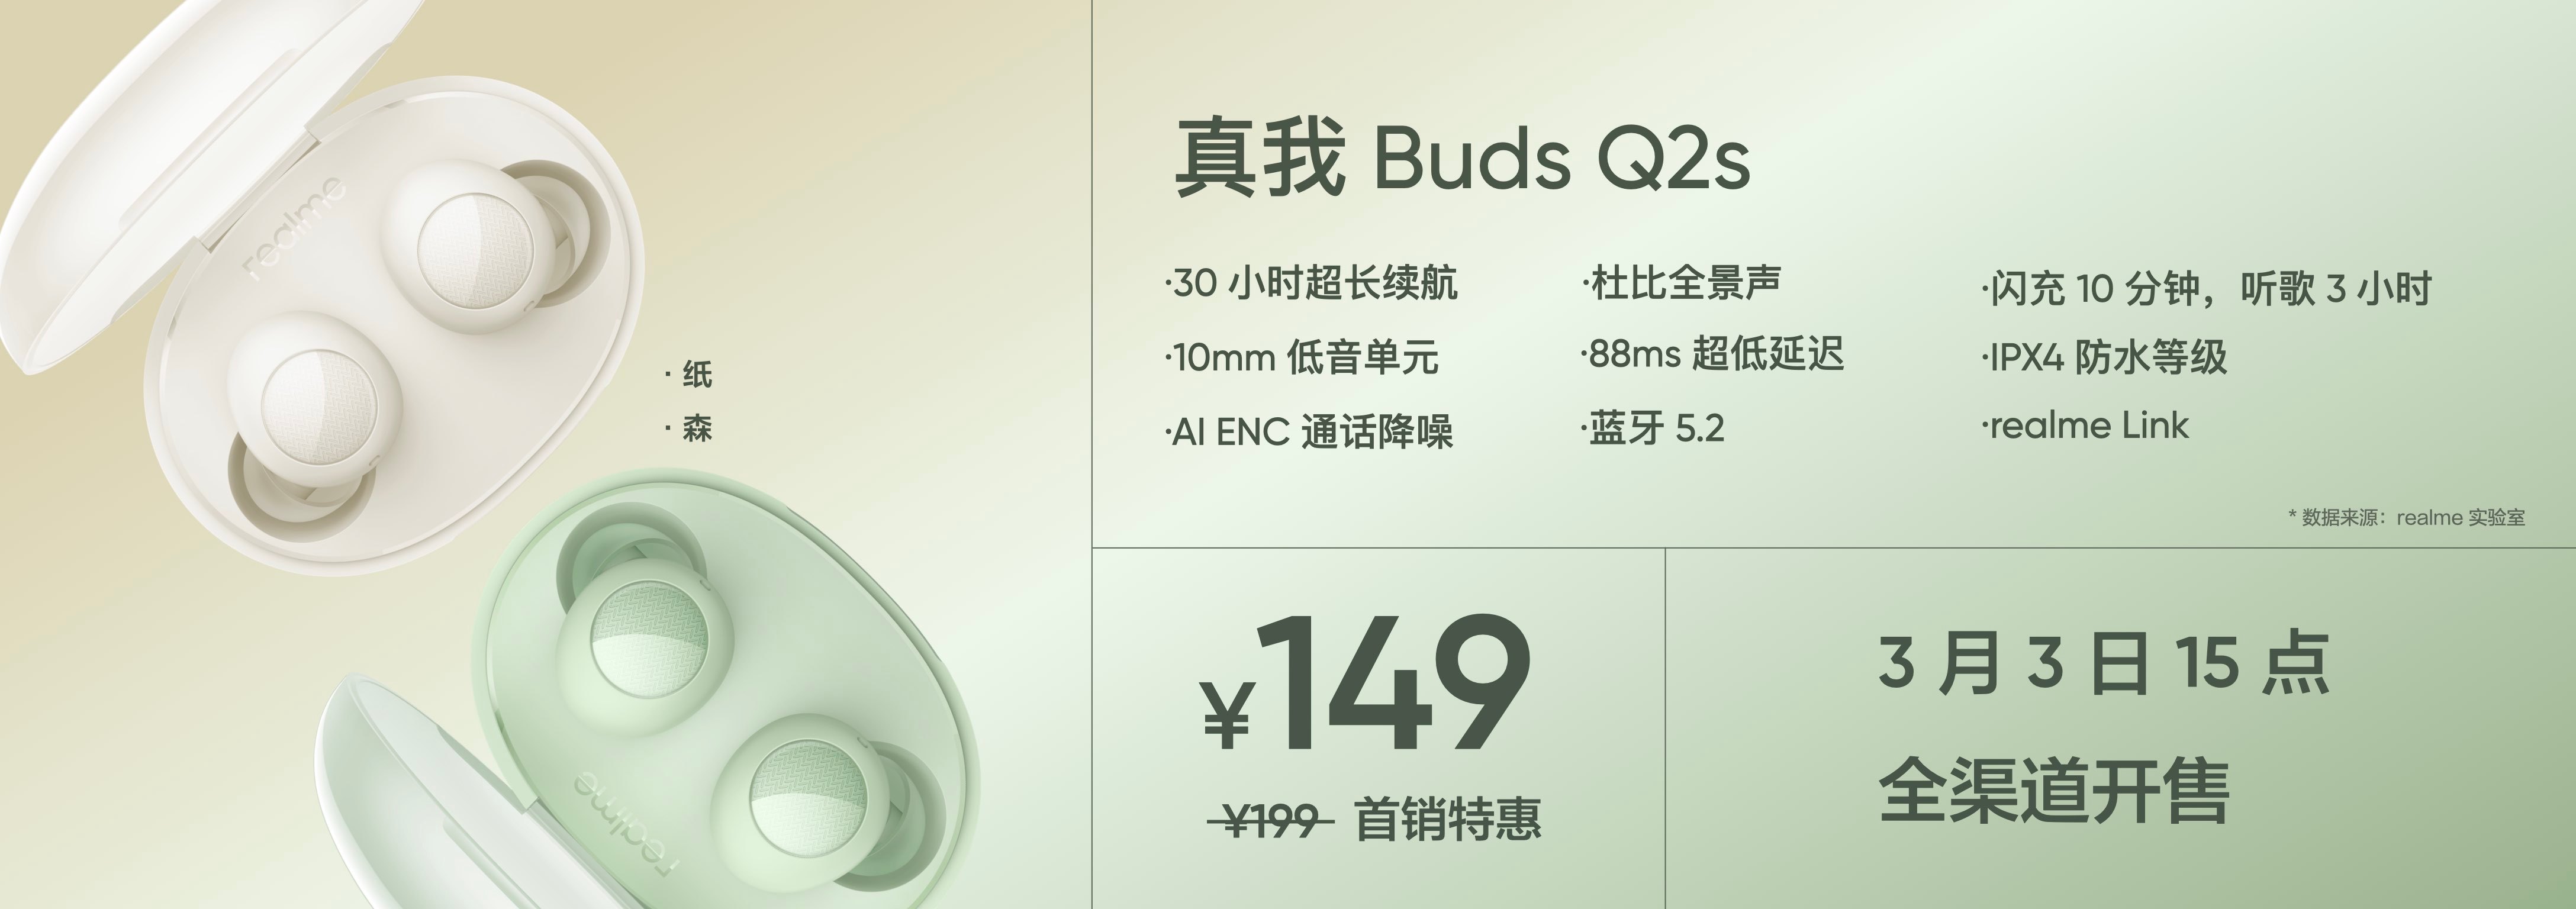 ريلمي تطلق سماعة Realme Buds Q2s اللاسلكية بسعر 32 دولار